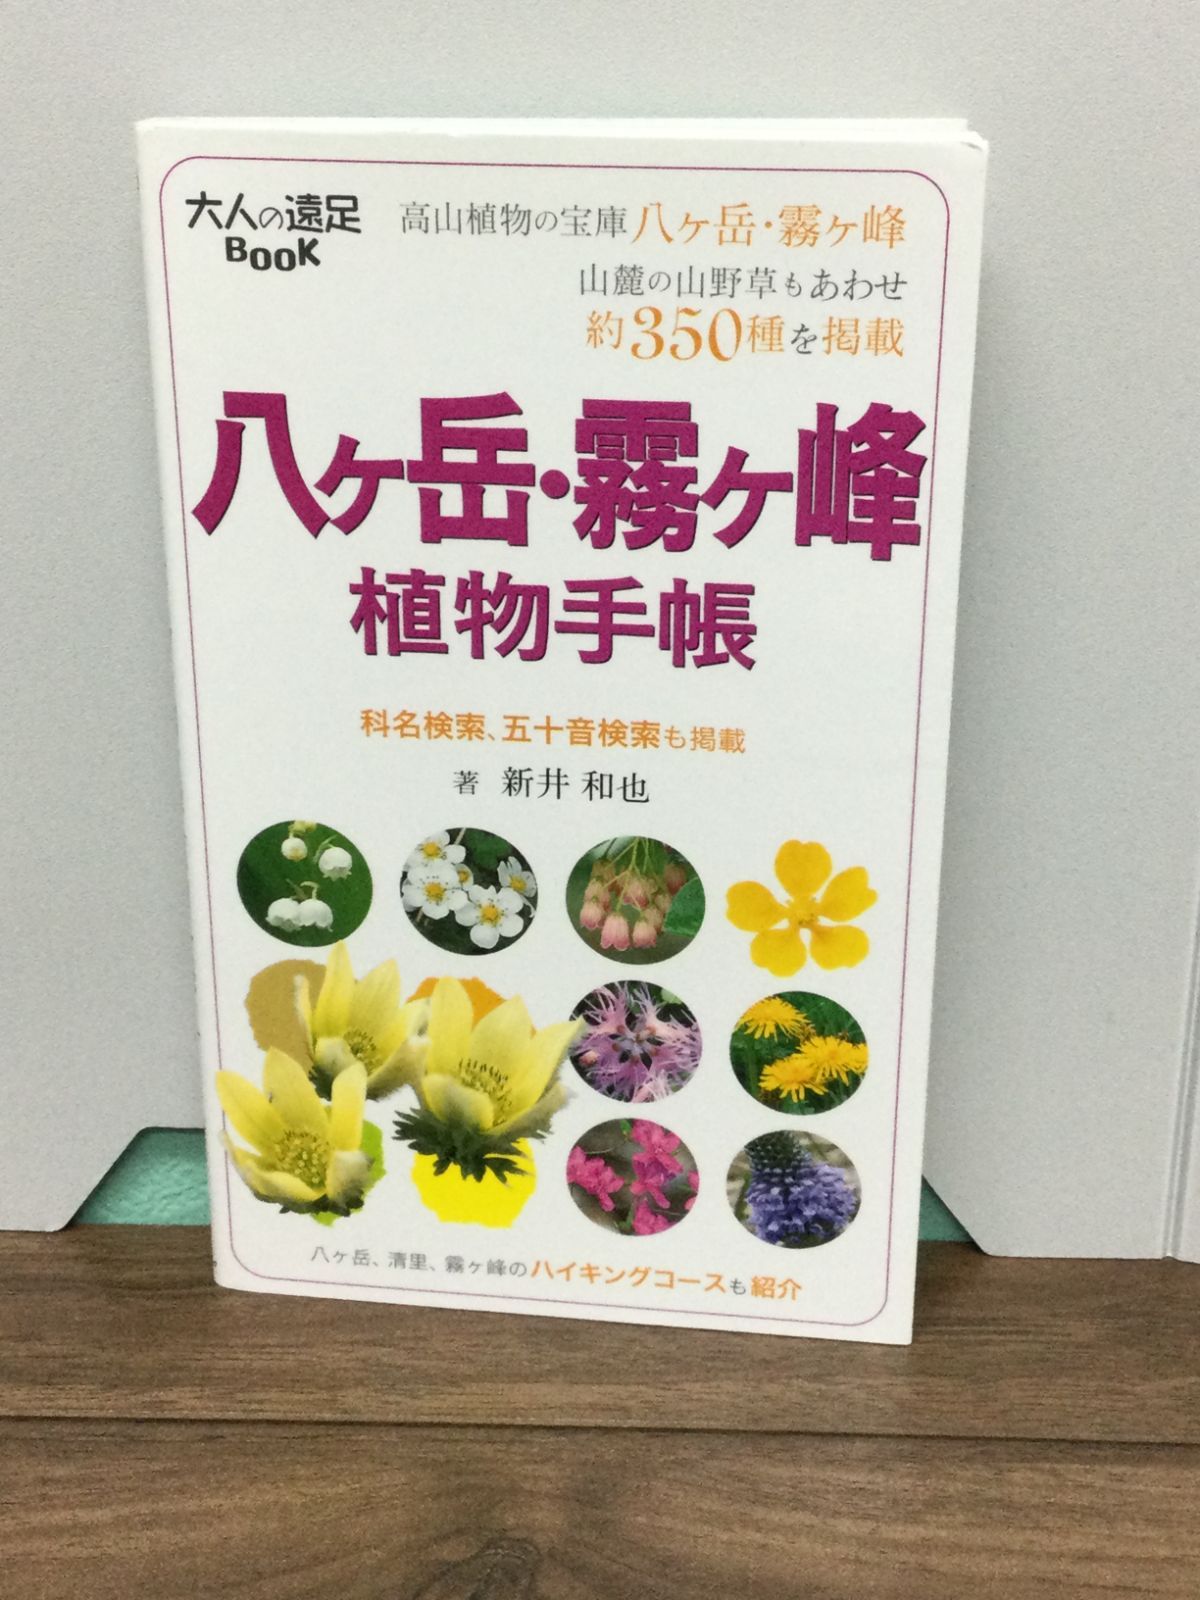 八ヶ岳・霧ヶ峰 植物手帳 (大人の遠足BOOK) 新井 和也 著 - メルカリ